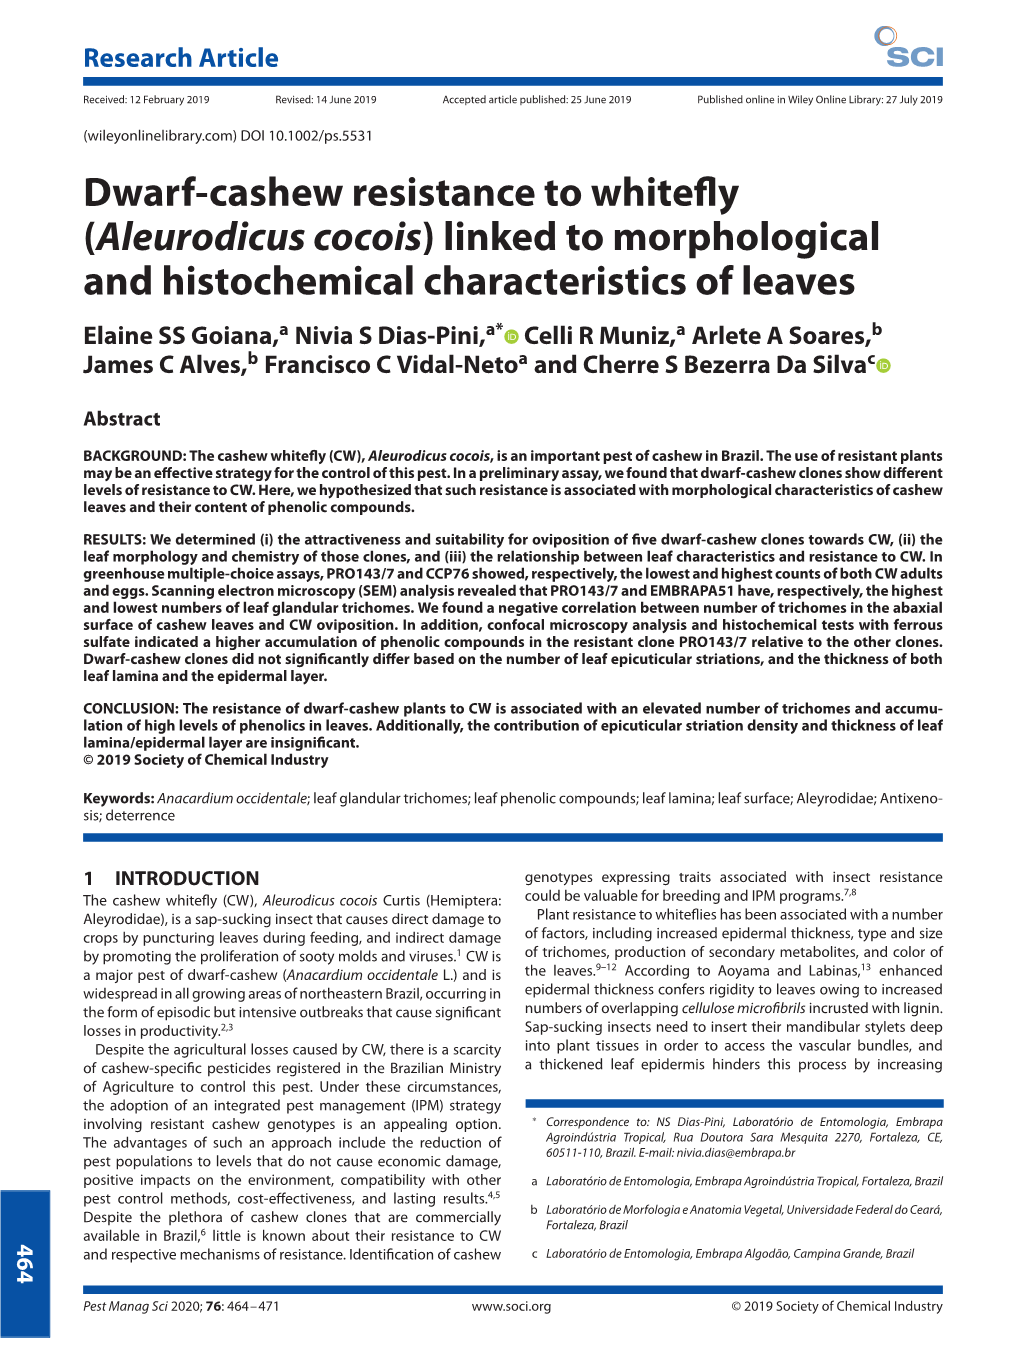 Dwarf-Cashew Resistance to Whitefly (Aleurodicus Cocois) Linked To